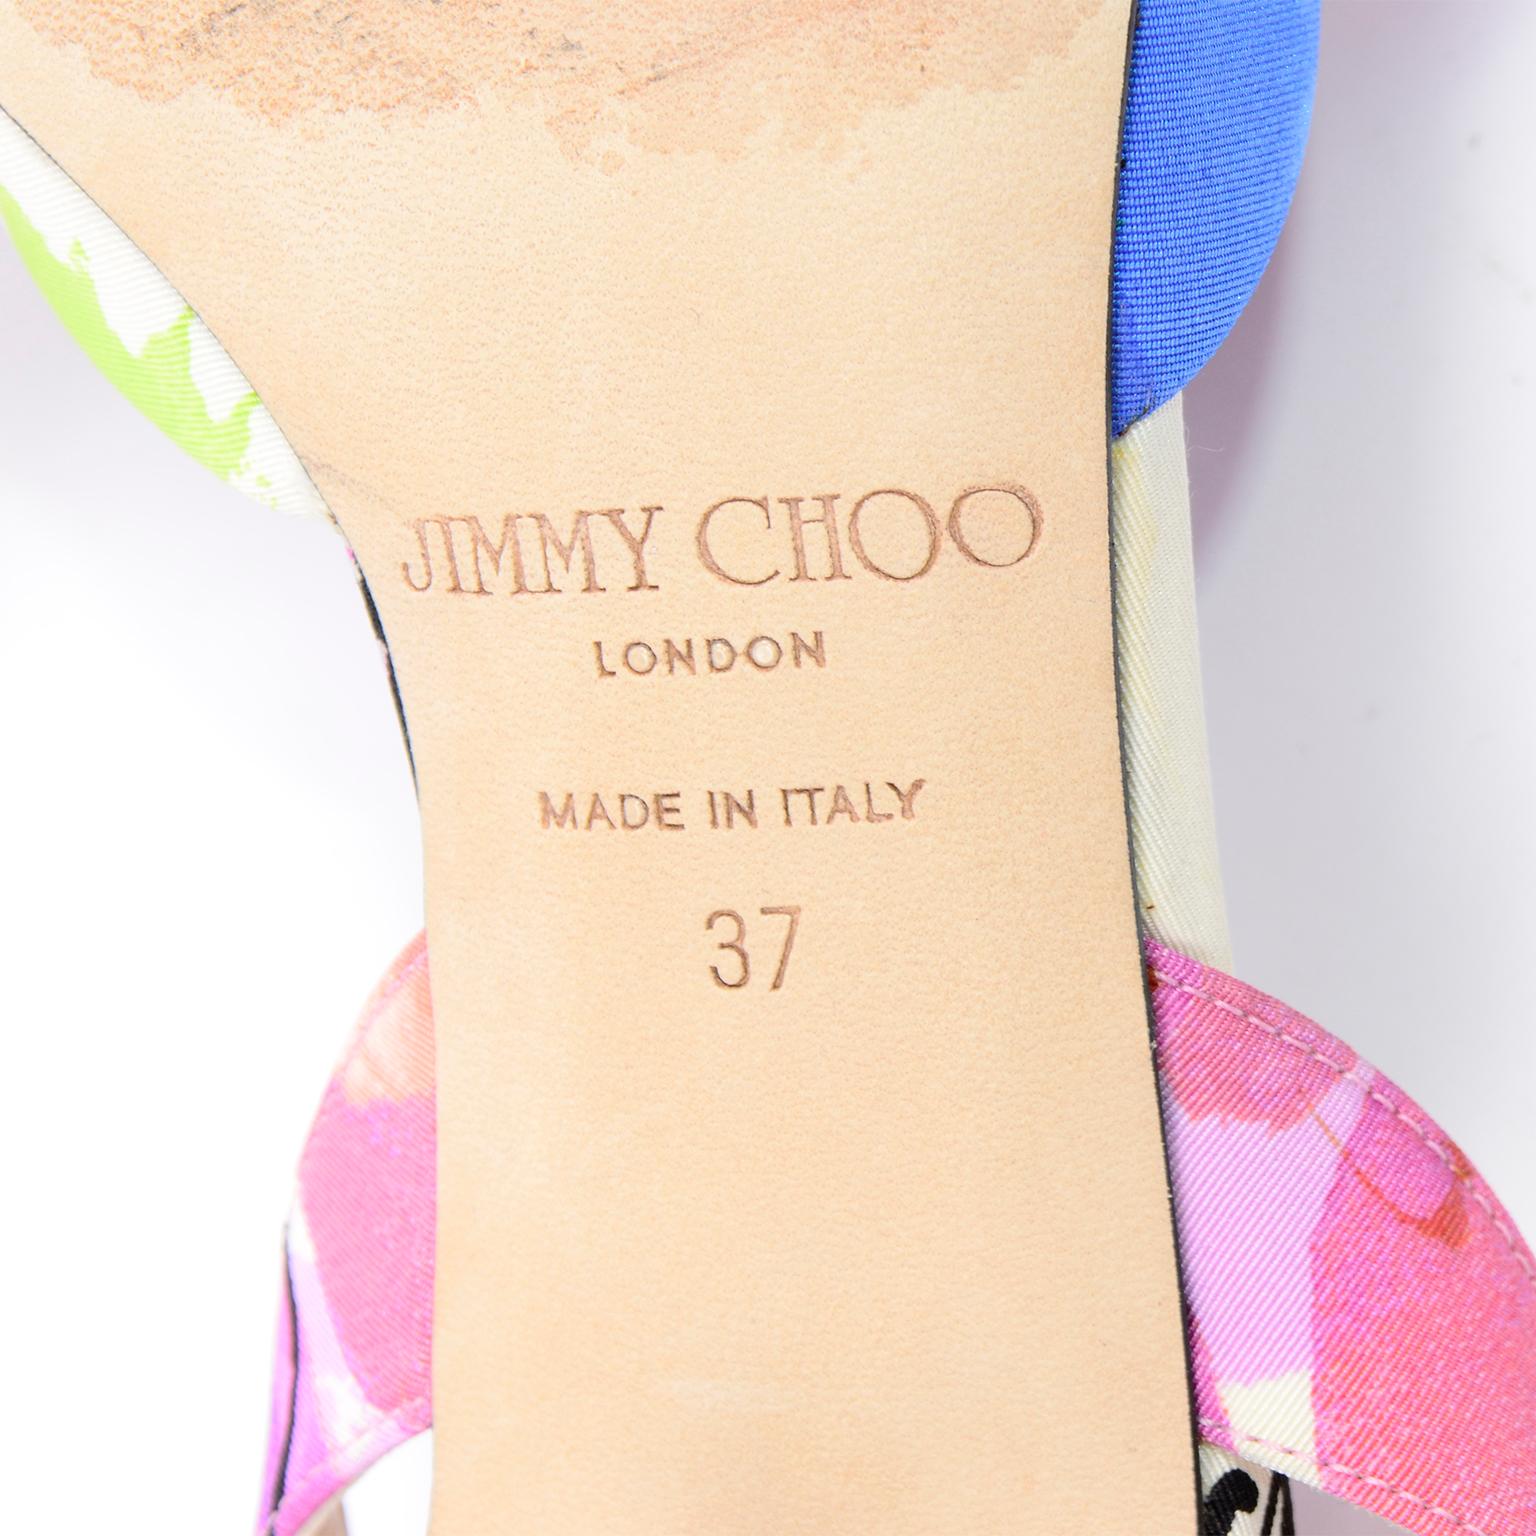 Jimmy Choo - Chaussures à fleurs roses - Talons aiguilles 5